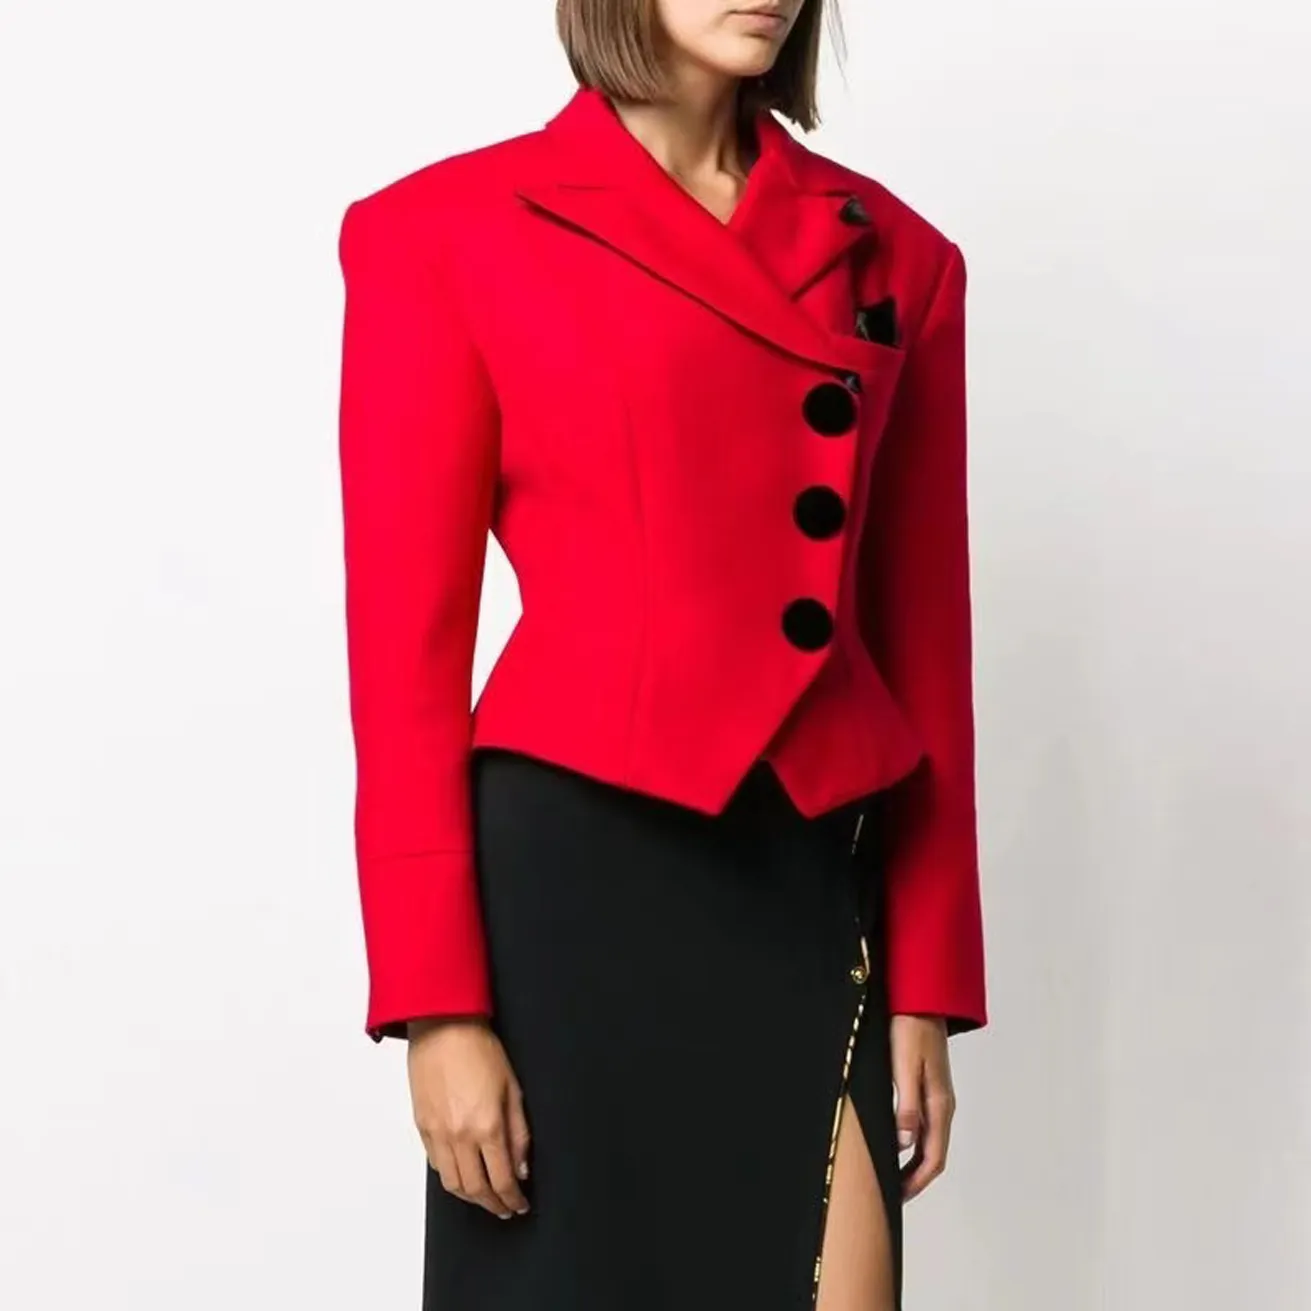 Kobiety damskie Projektowanie ubrań Blazery Slim Red Short Suits Nowe wydane wierzch A100